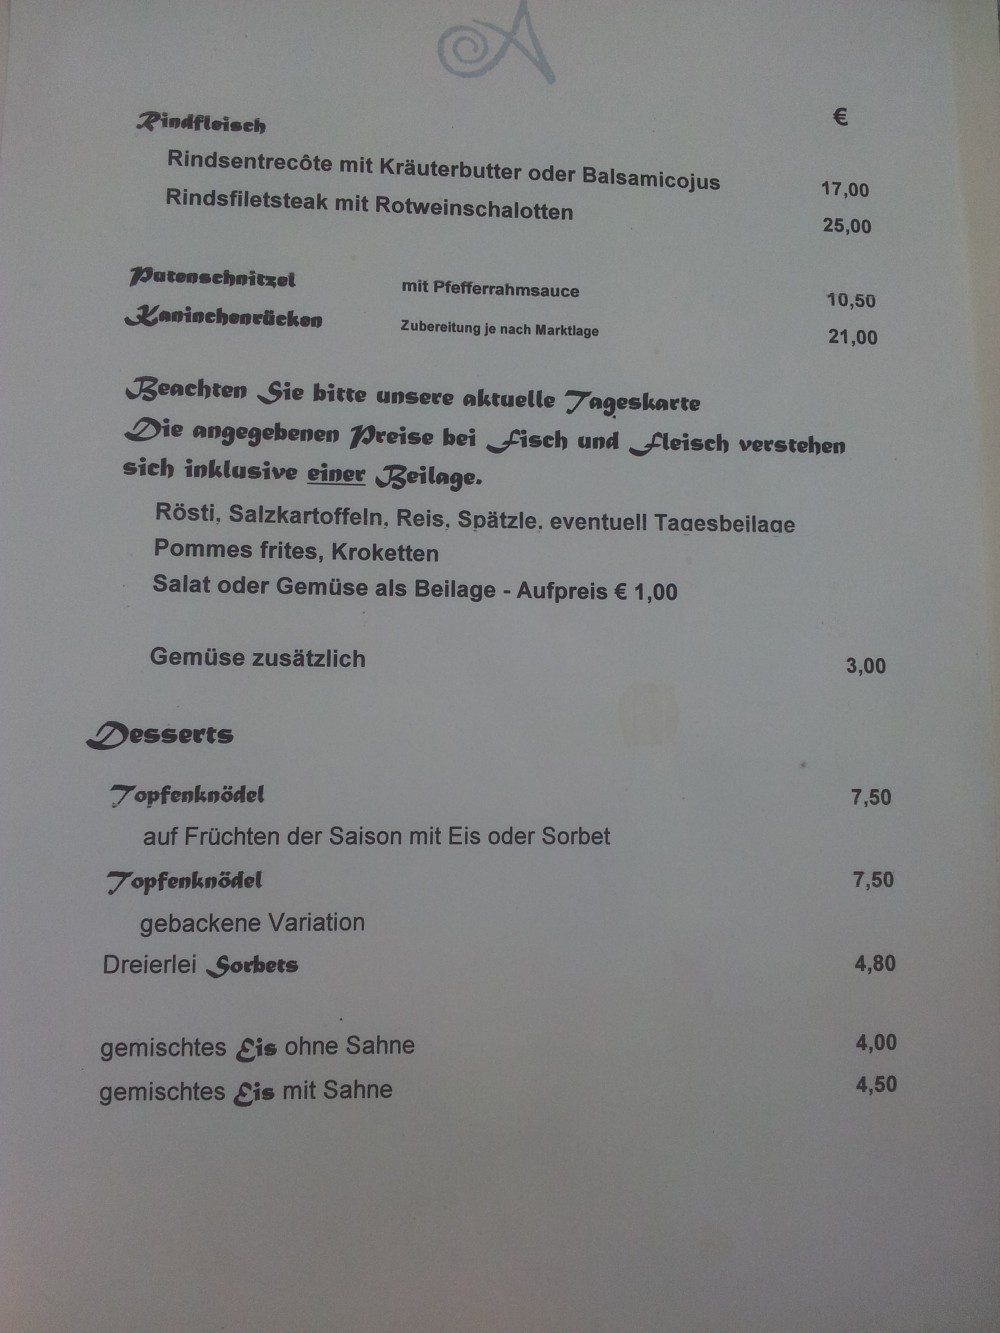 Hauptspeisen, Beilagen und Desserts. - Adler - Hohenems